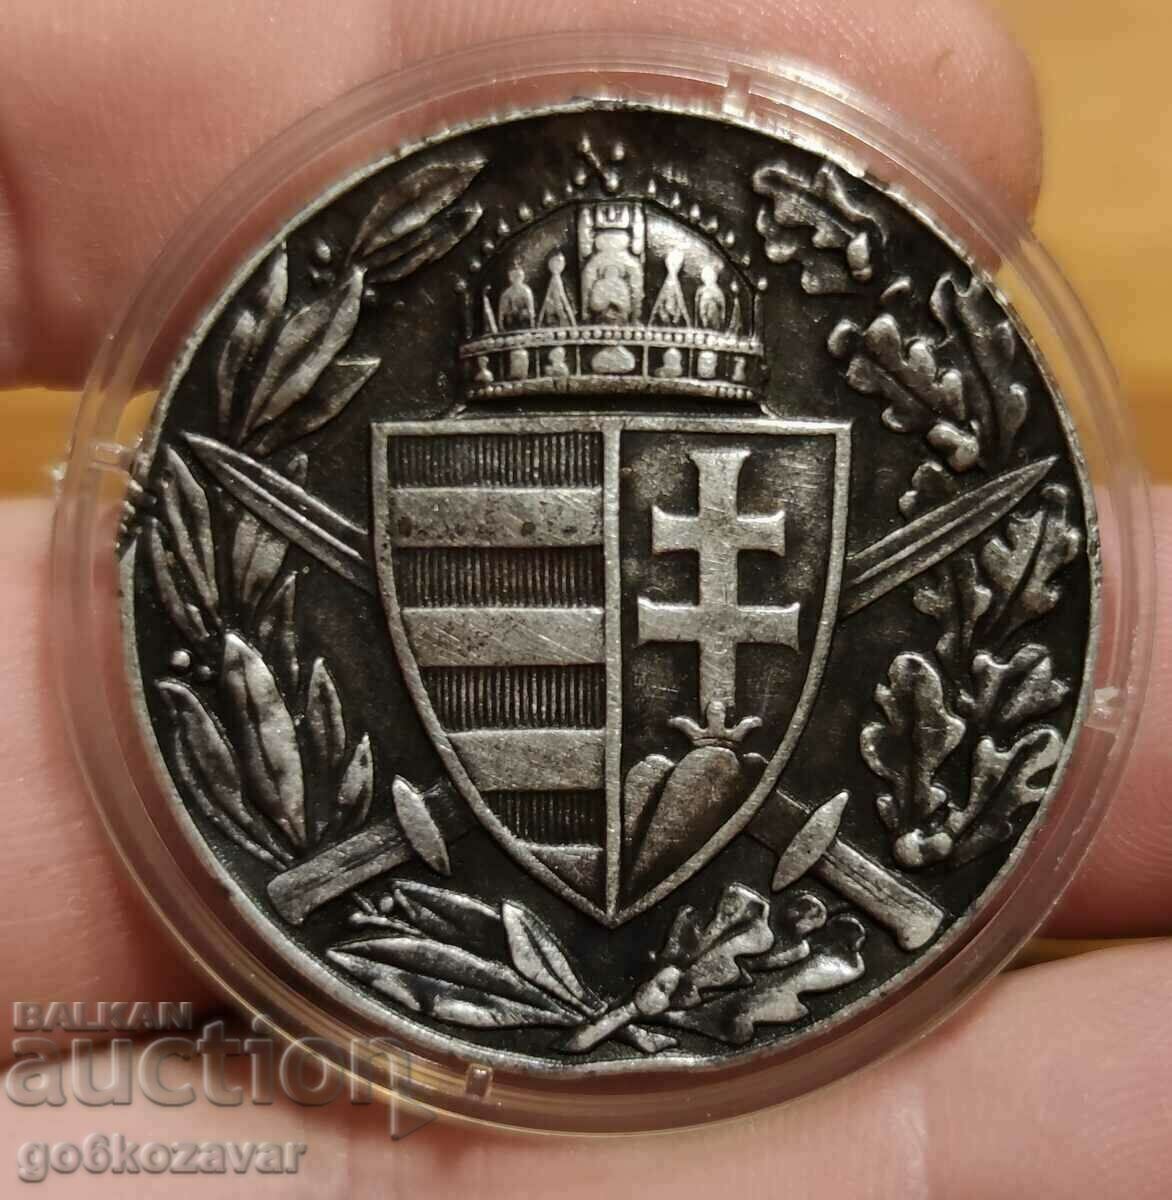 Ασημένιο μετάλλιο Αυστροουγγαρίας Α' Παγκοσμίου Πολέμου! 1914-1918 Πρωτότυπο